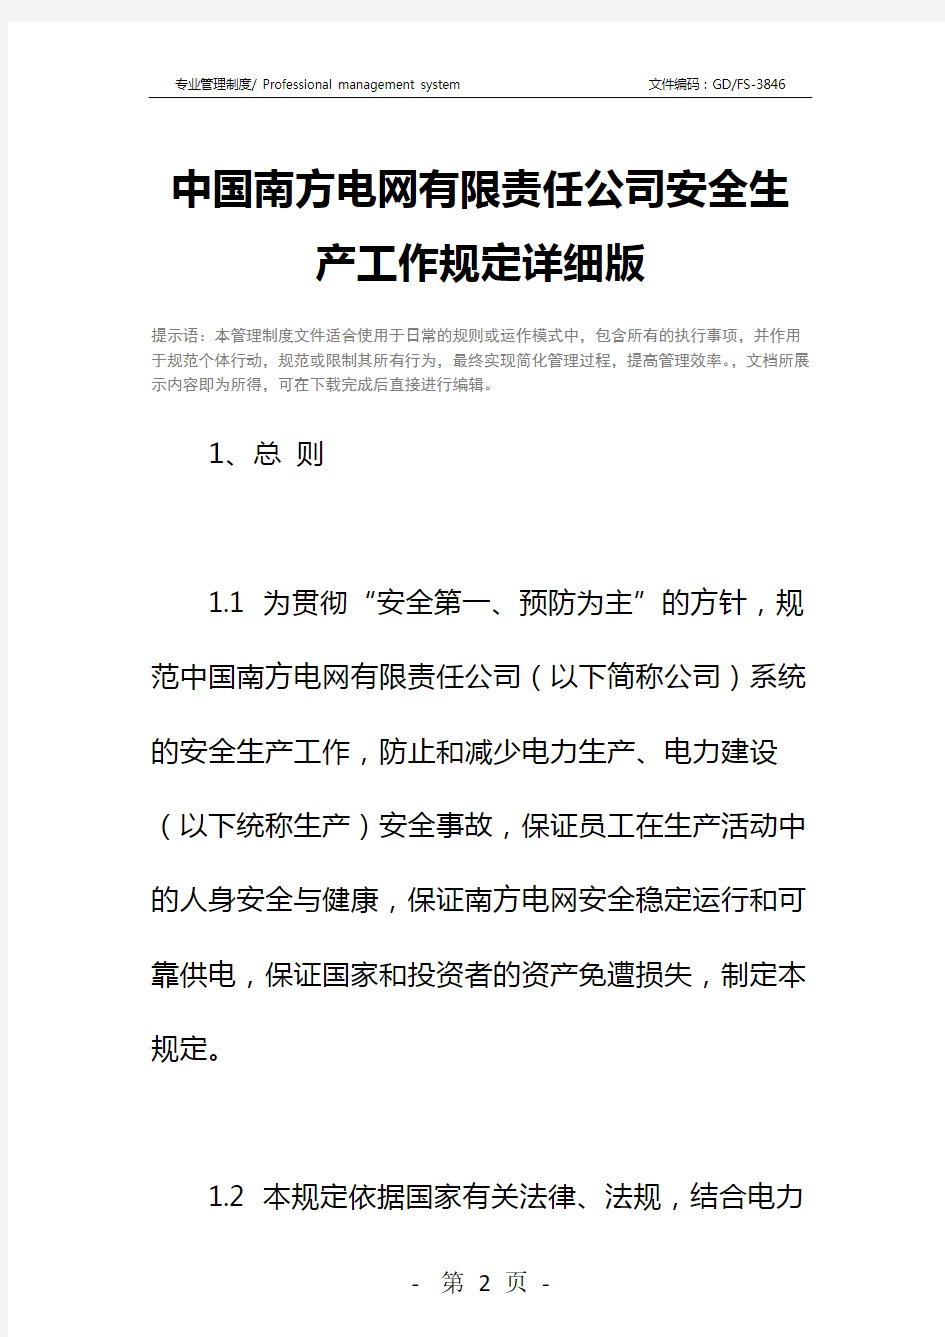 中国南方电网有限责任公司安全生产工作规定详细版